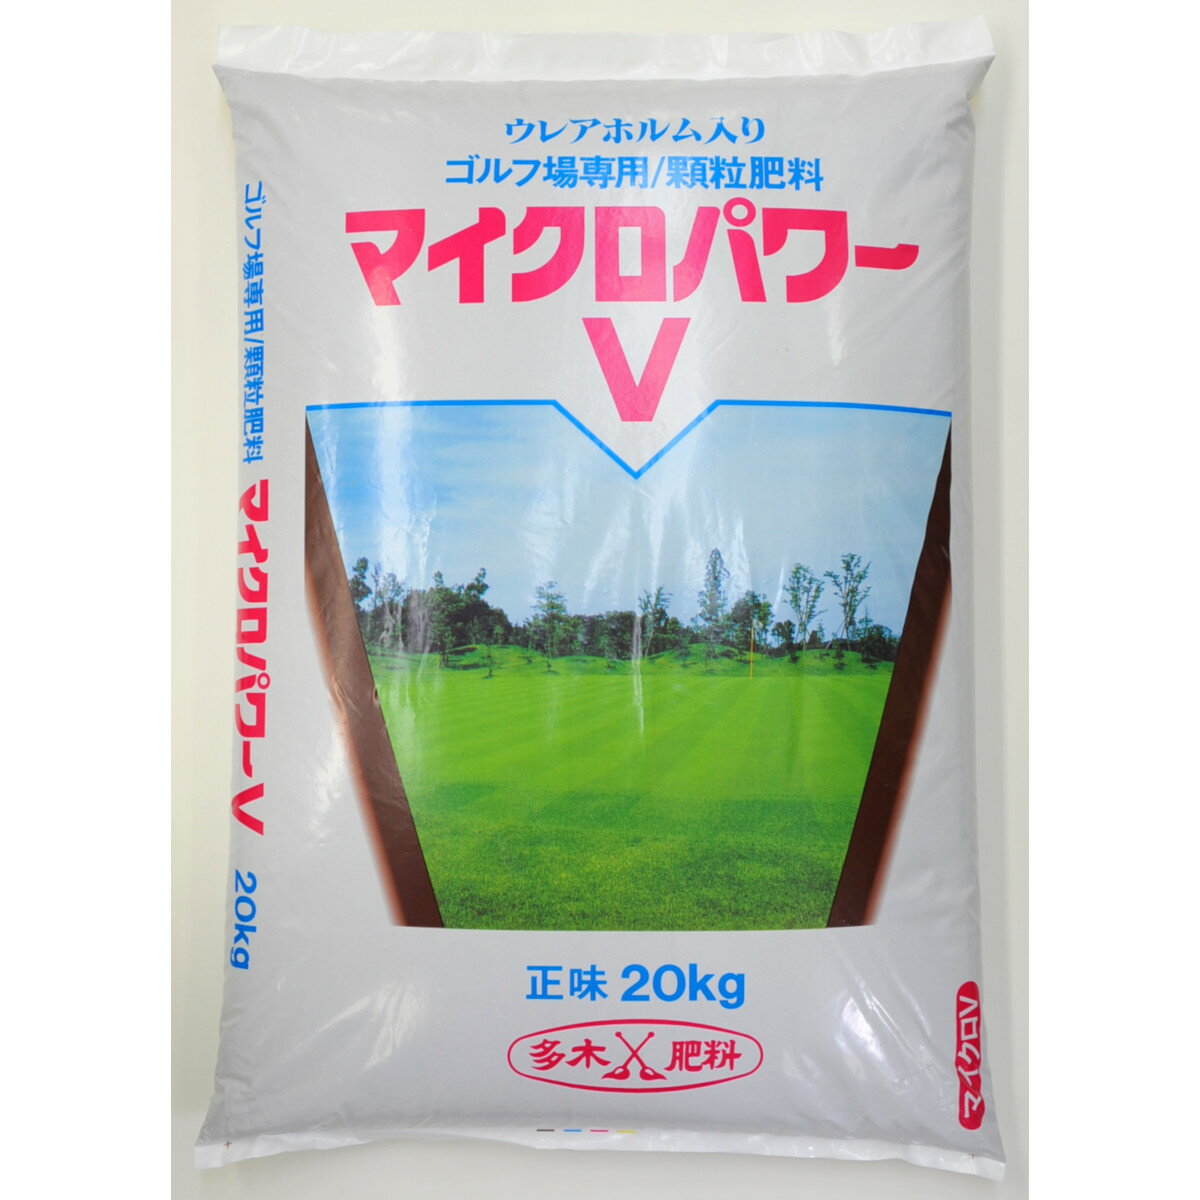 芝専用肥料 マイクロパワーV号 20kg 芝生 肥料 顆粒肥料 ゴルフ場 グリーン ベントグラス コウライシバ